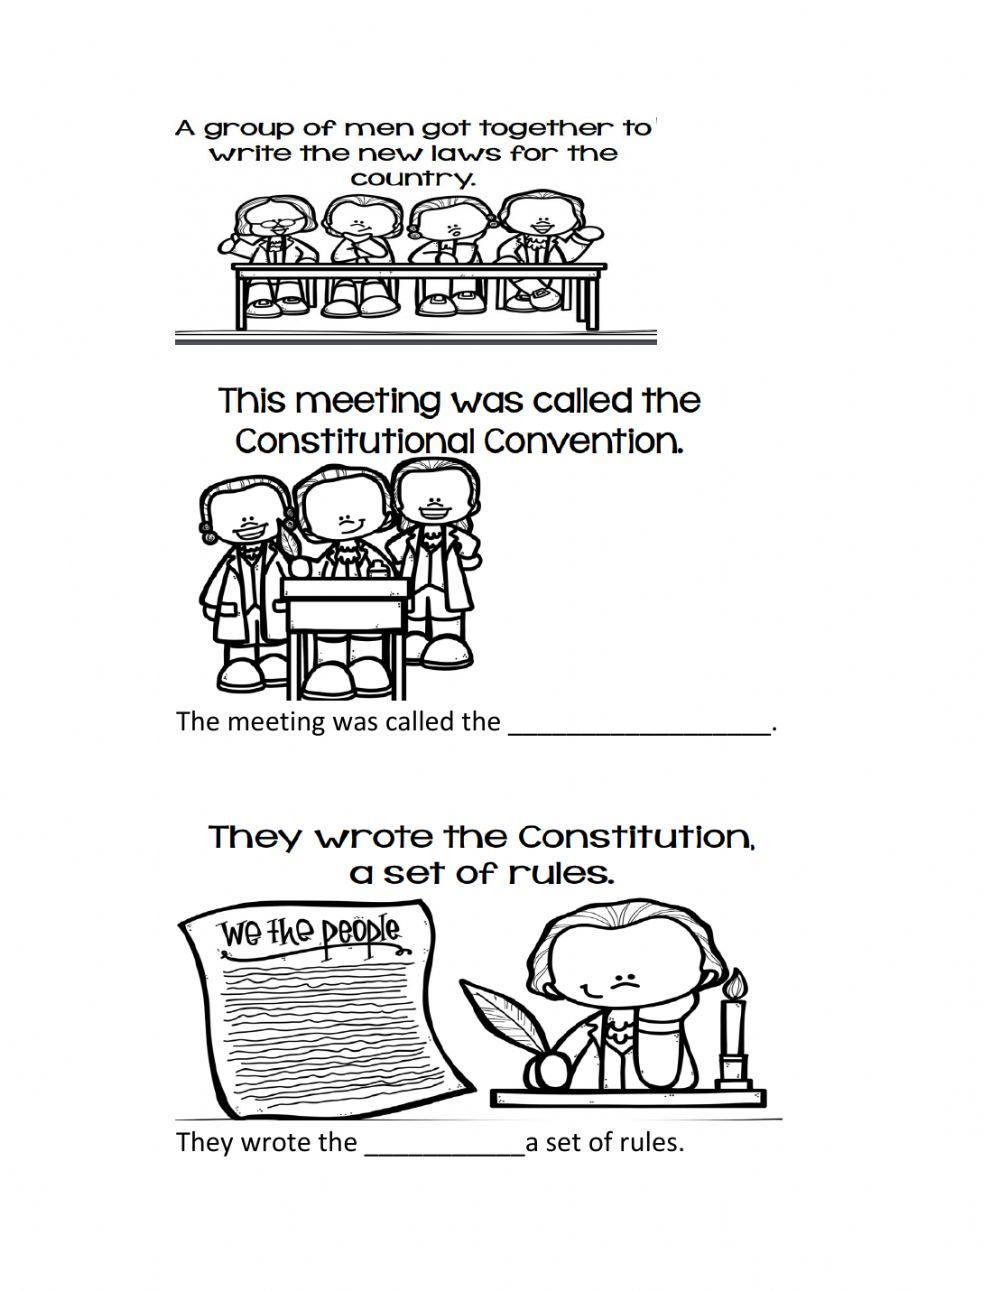 The constitution